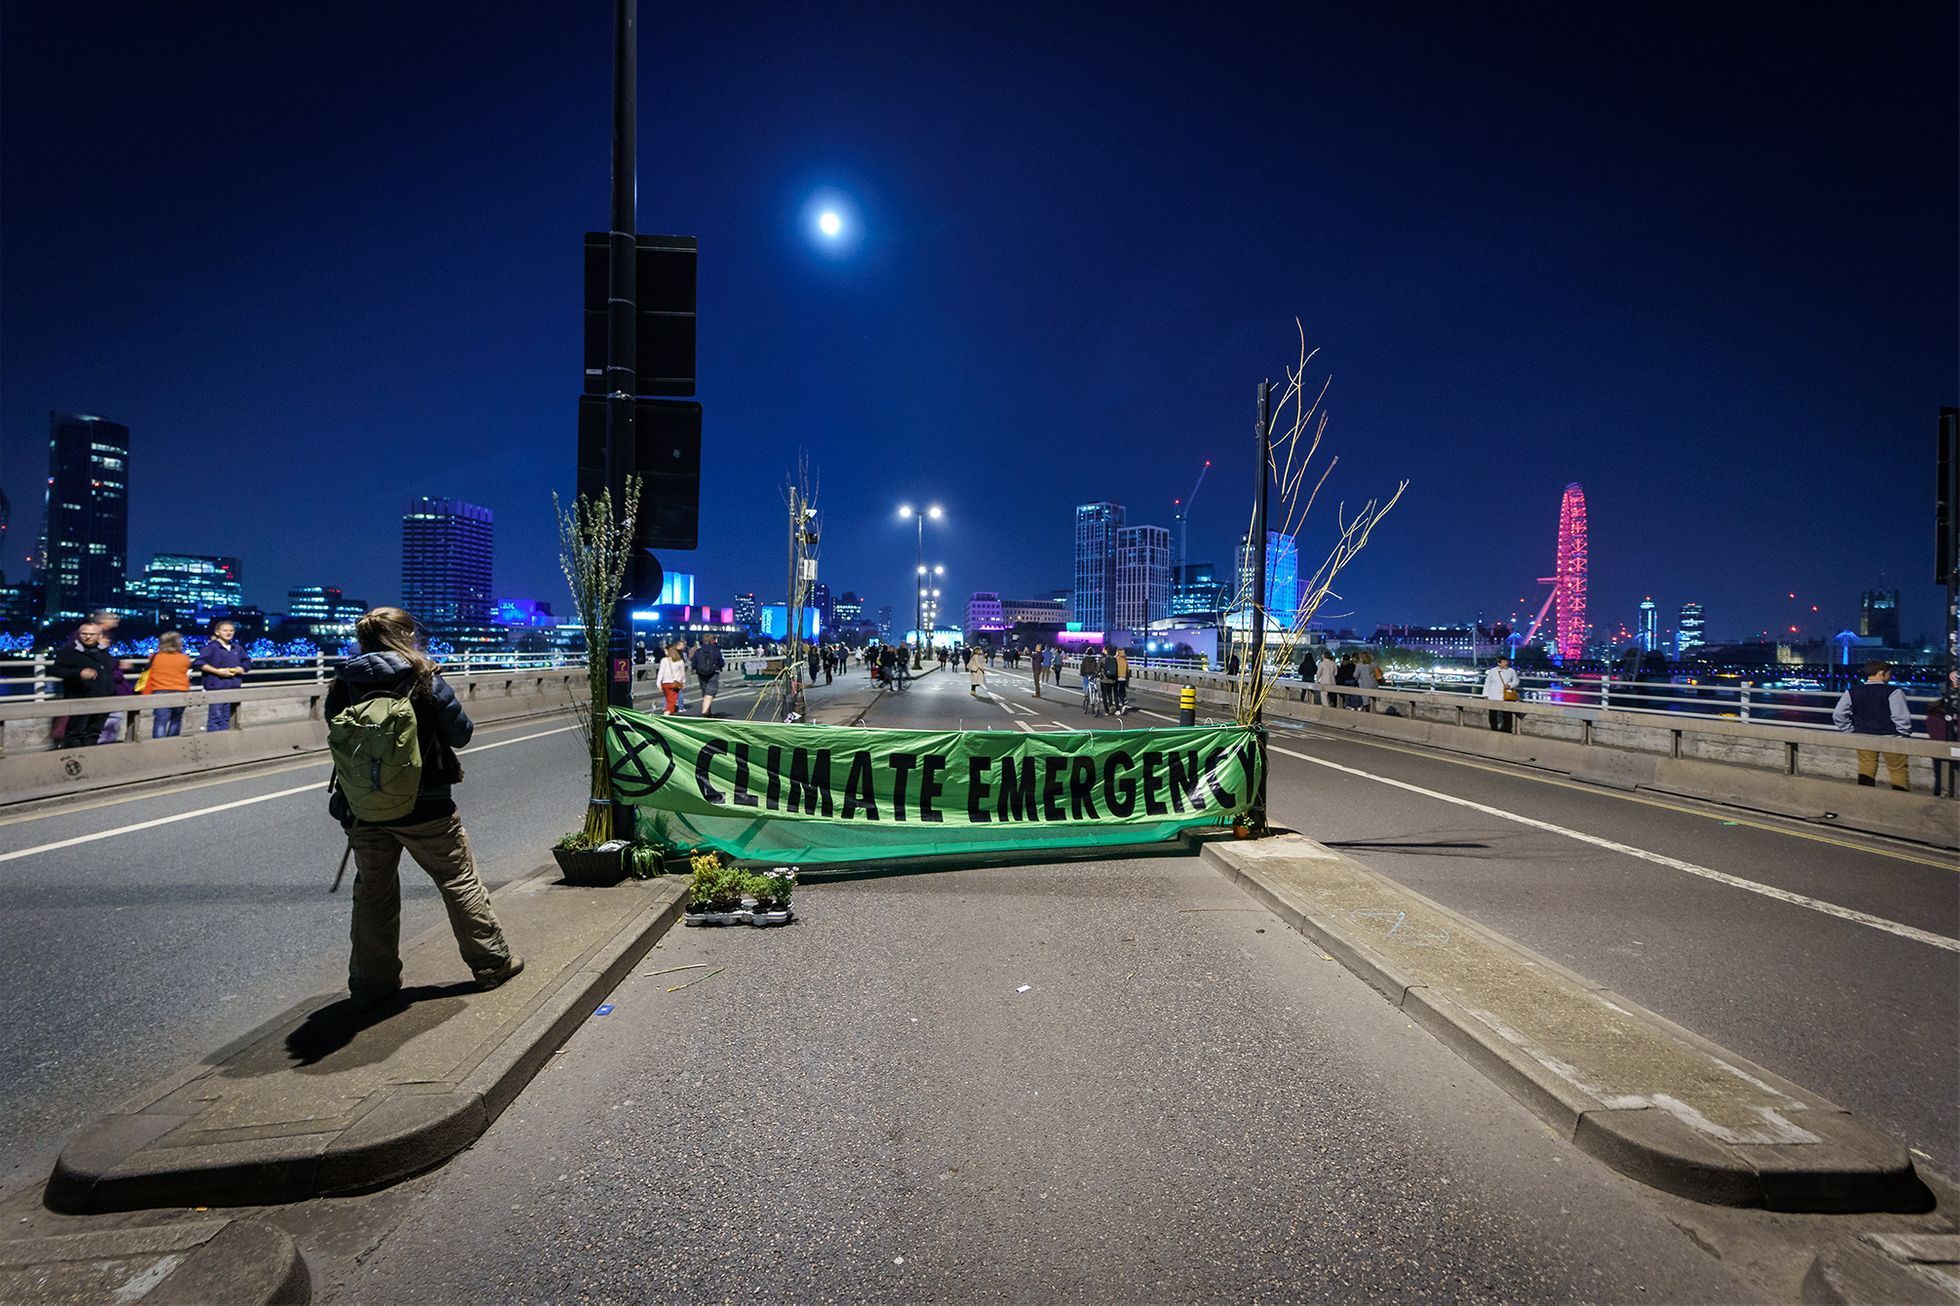 Londýn - Extinction Rebellion. Protesty proti změnám klimatu